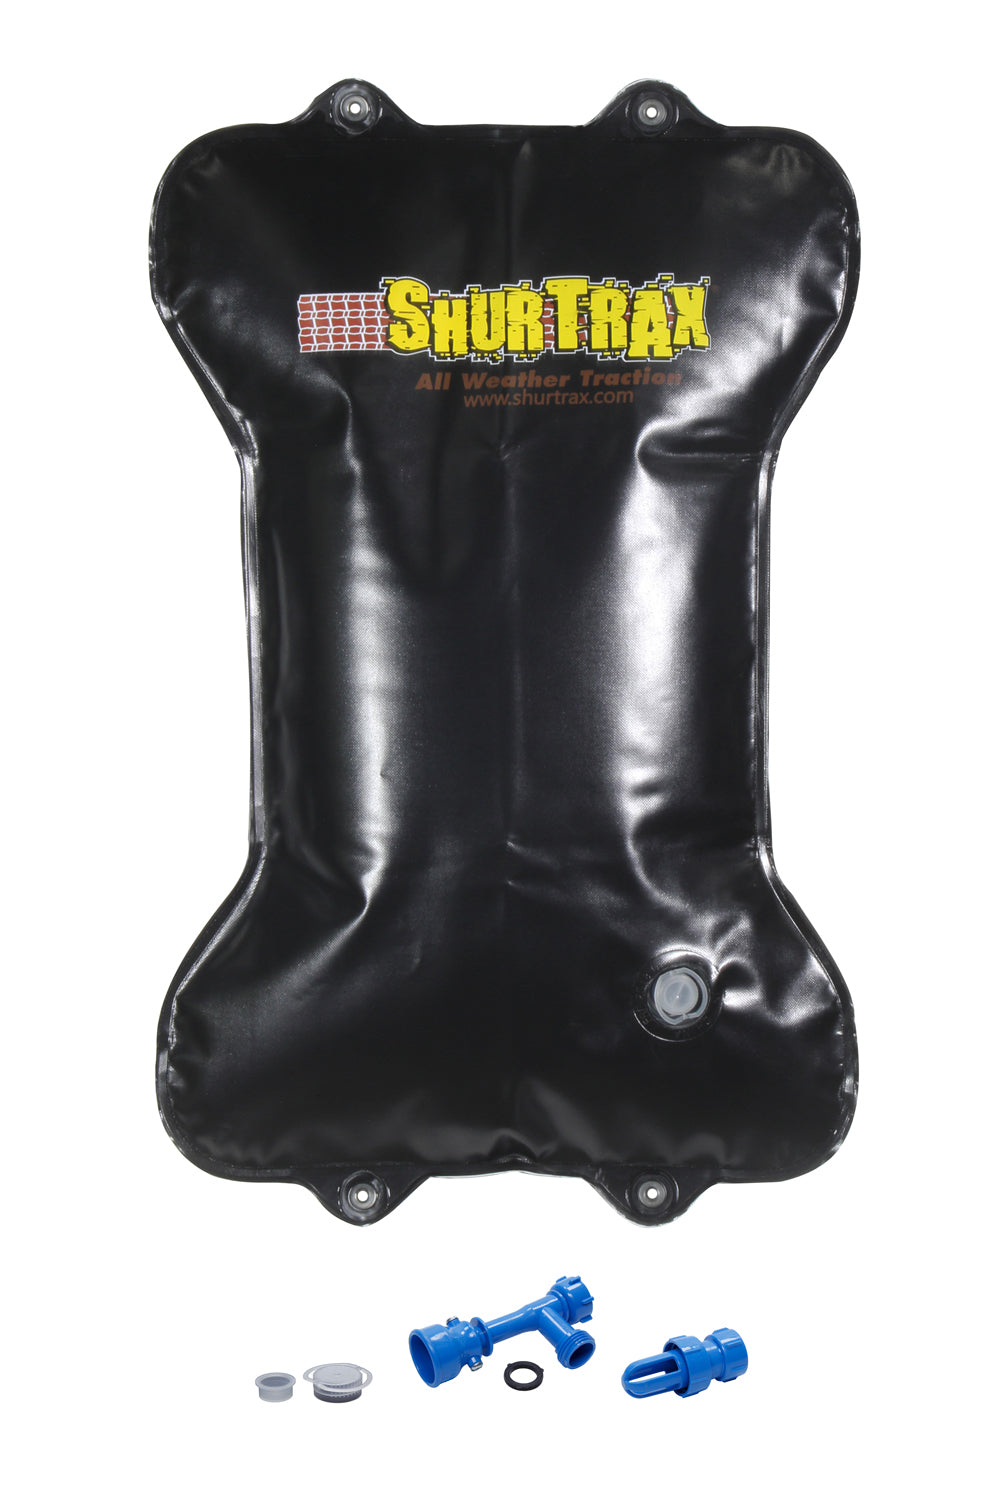 Shurtrax Auto/SUV Traction Aid SHU10036